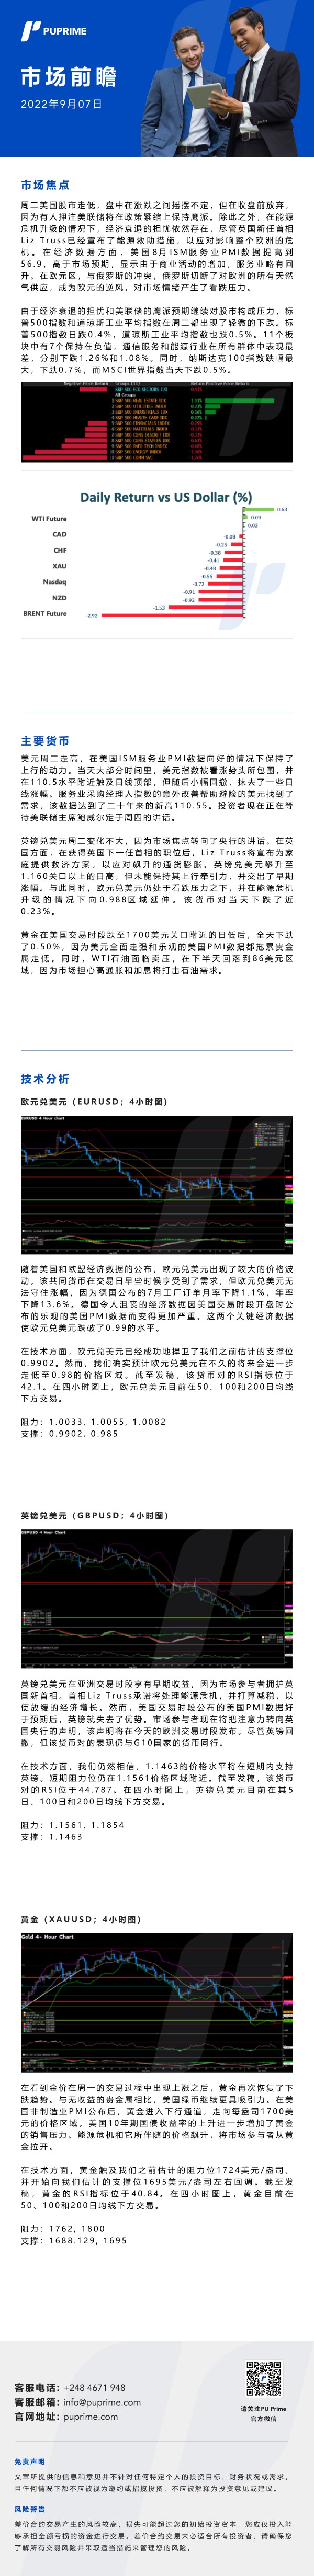 市场前瞻_中文.jpg